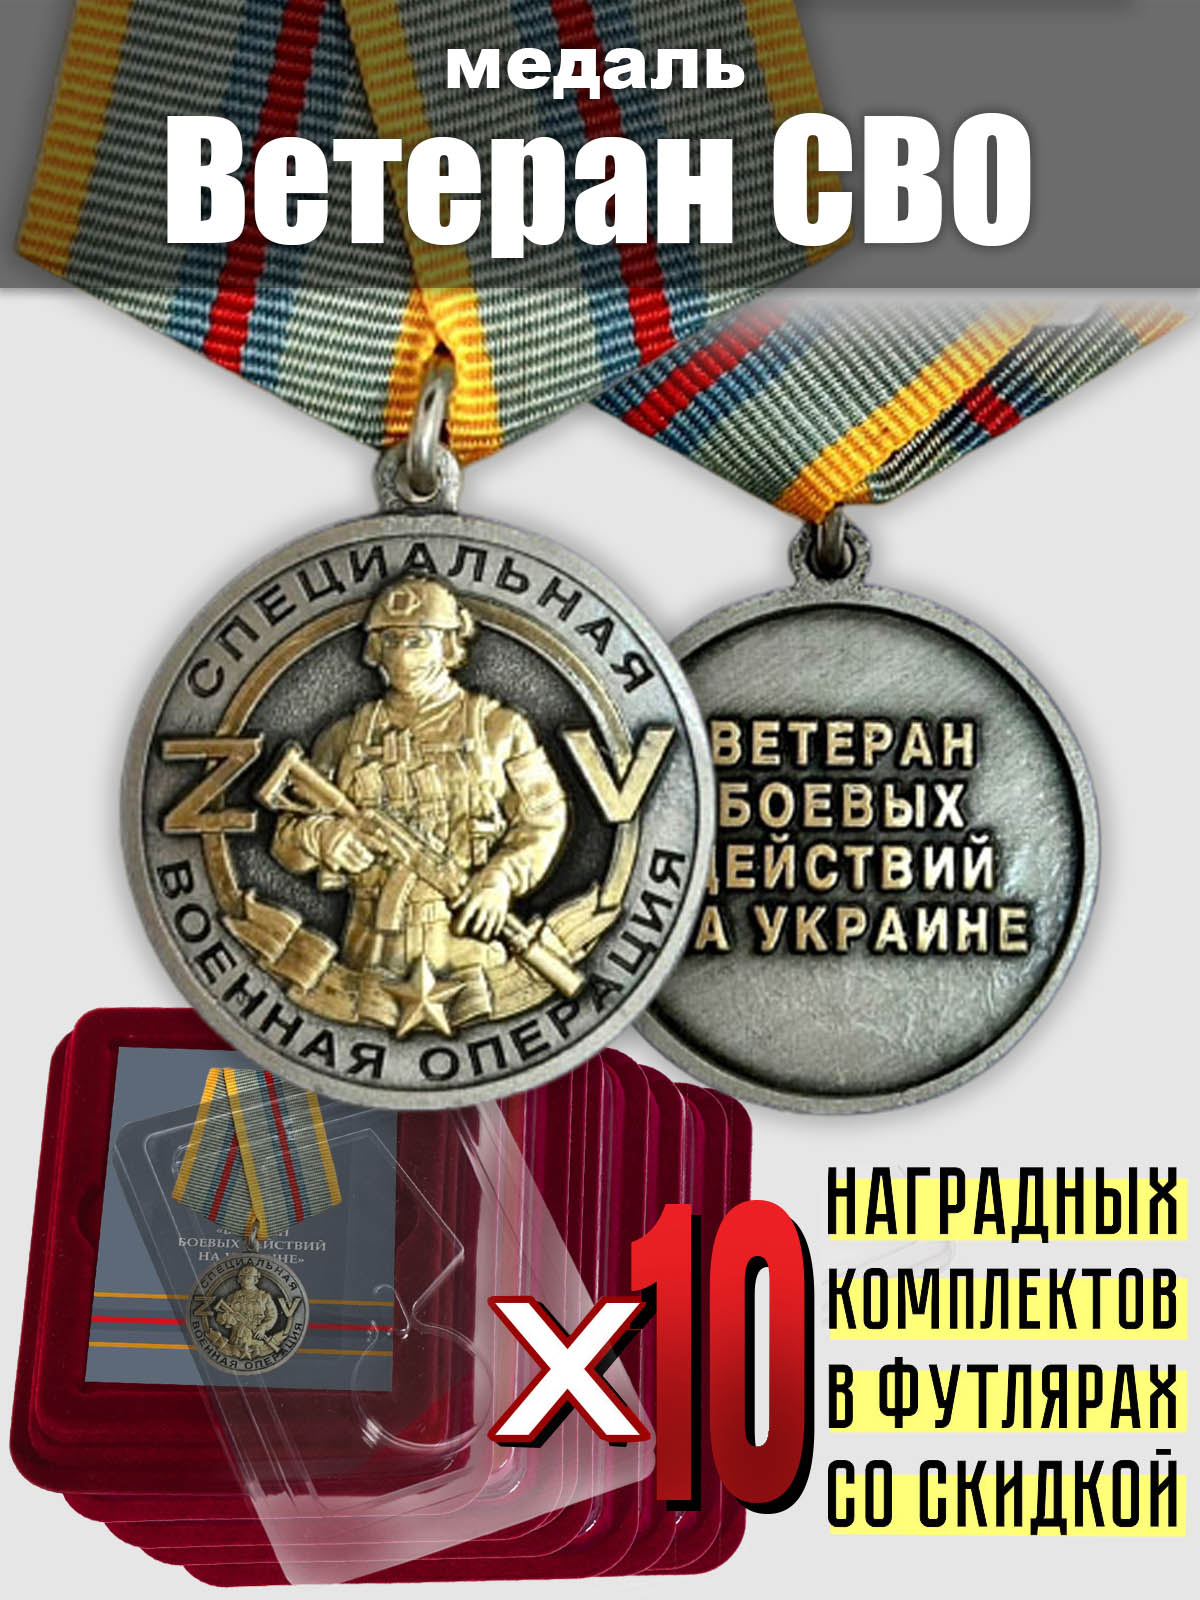 Комплект медалей "Ветеран СВО" (10 шт.)